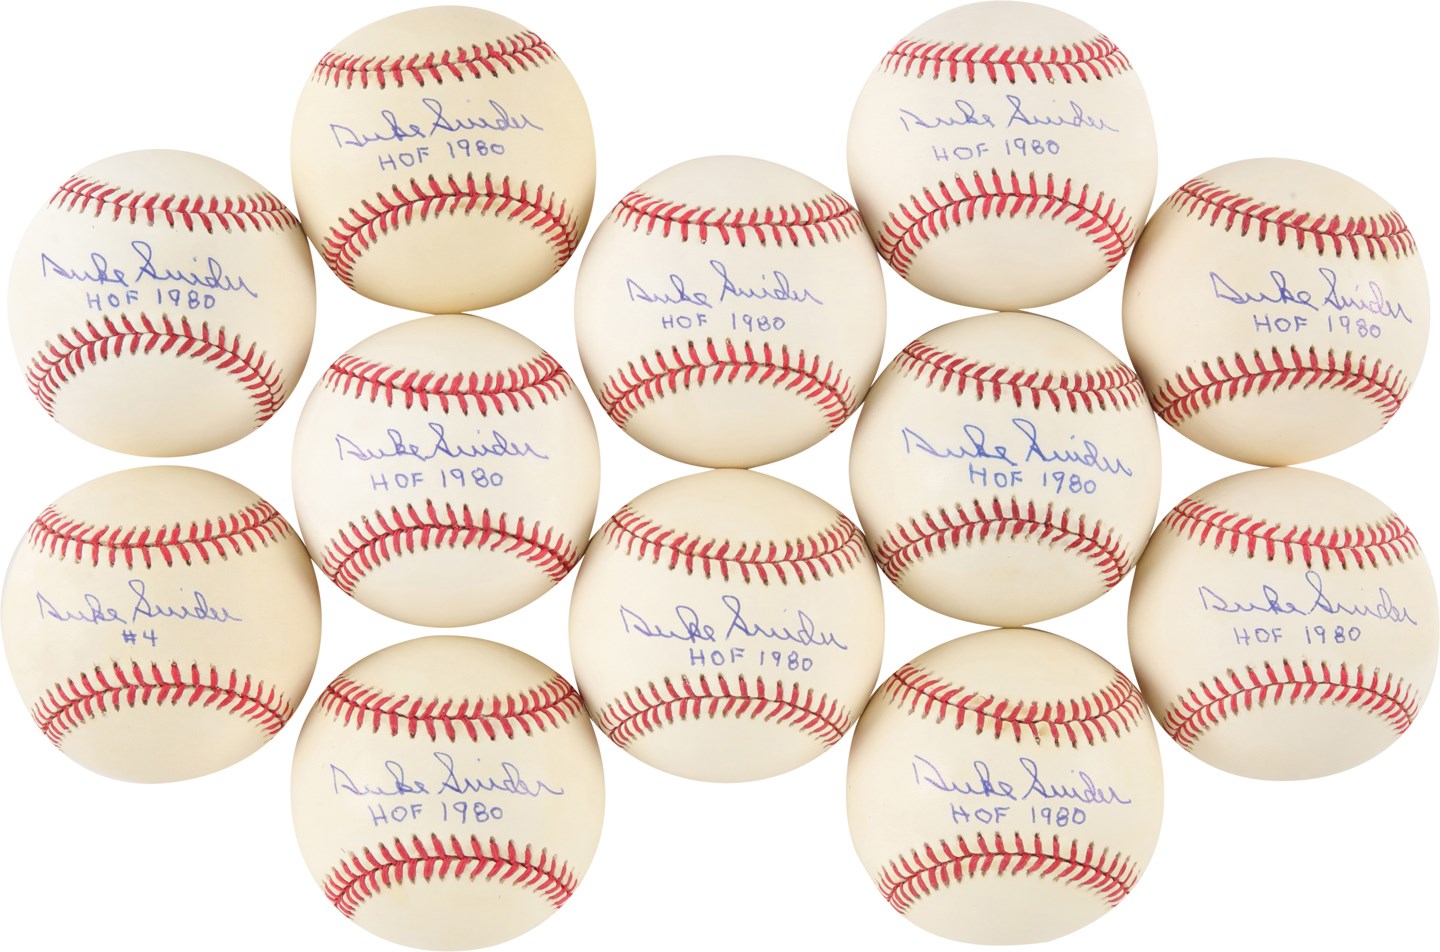 Baseball Autographs - One Dozen Duke Snider Single Signed Baseballs w/"HOF 1980" Notation